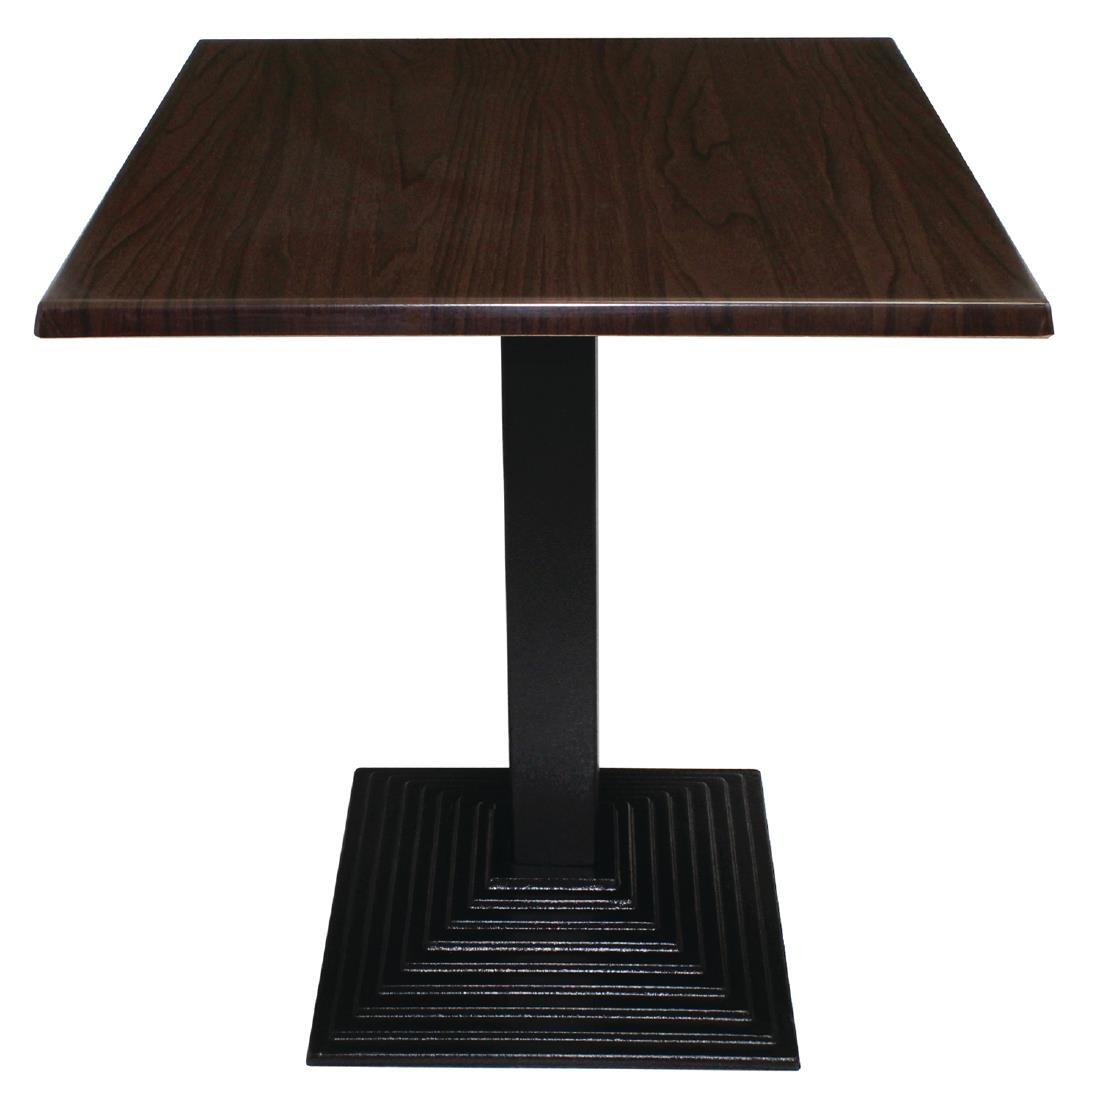 Bolero Pre-drilled Square Table Top Dark Brown 700mm - GG639  - 2